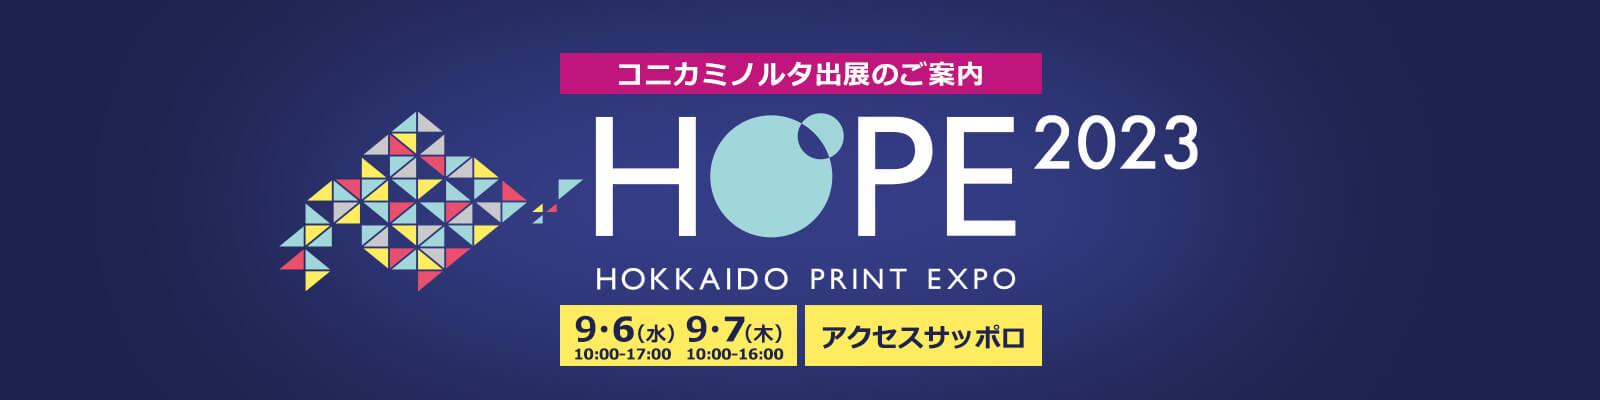 HOPE2023（HOKKAIDO PRINT EXPO）のキービジュアル